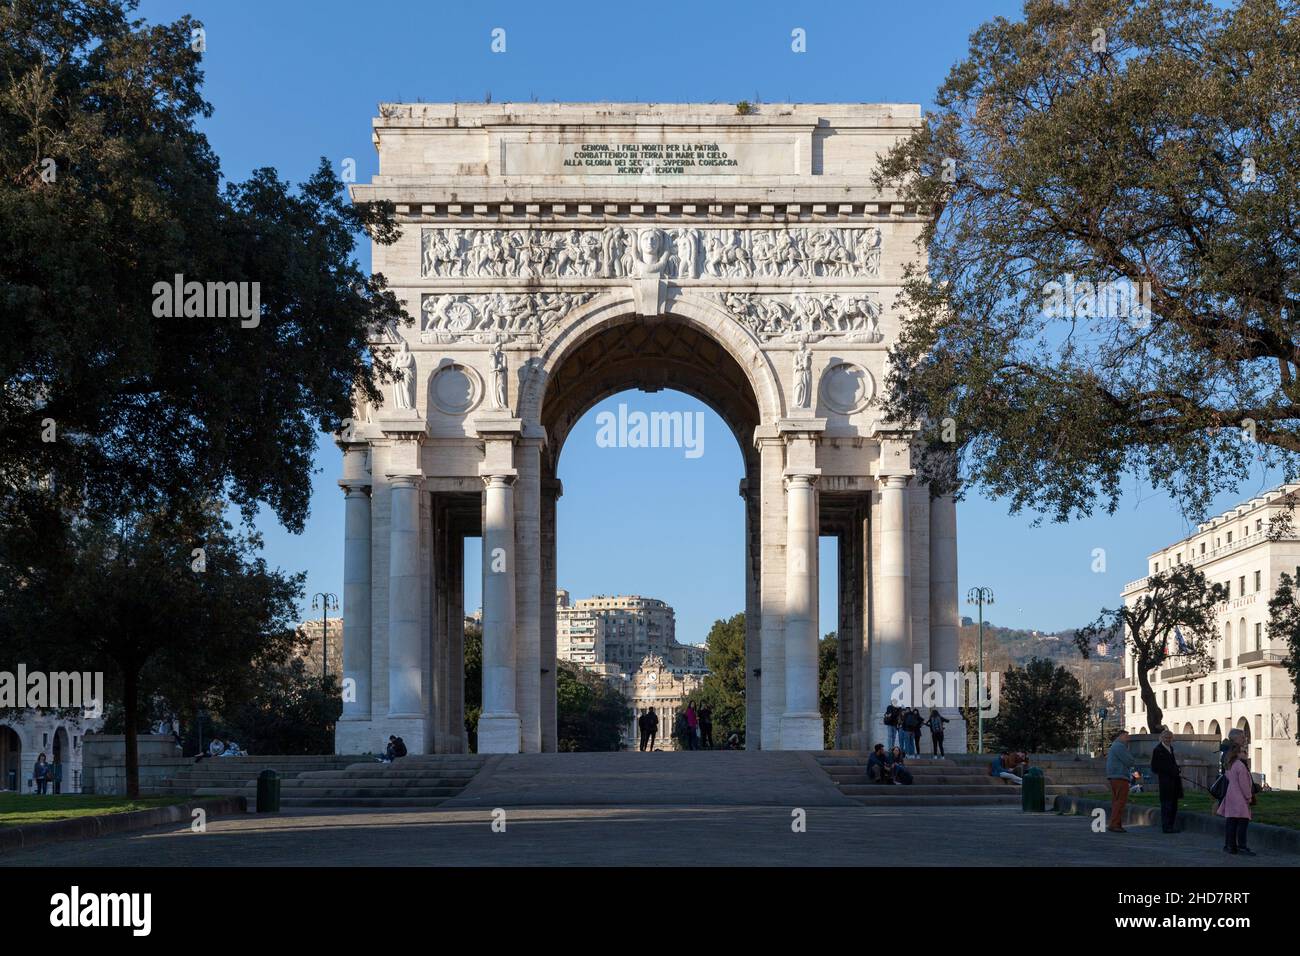 Genova, Italy - March 29 2019: The Arco della Vittoria (Victory Arch), also known as Monumento ai Caduti or Arco dei Caduti (Arch of the Fallen), is a Stock Photo